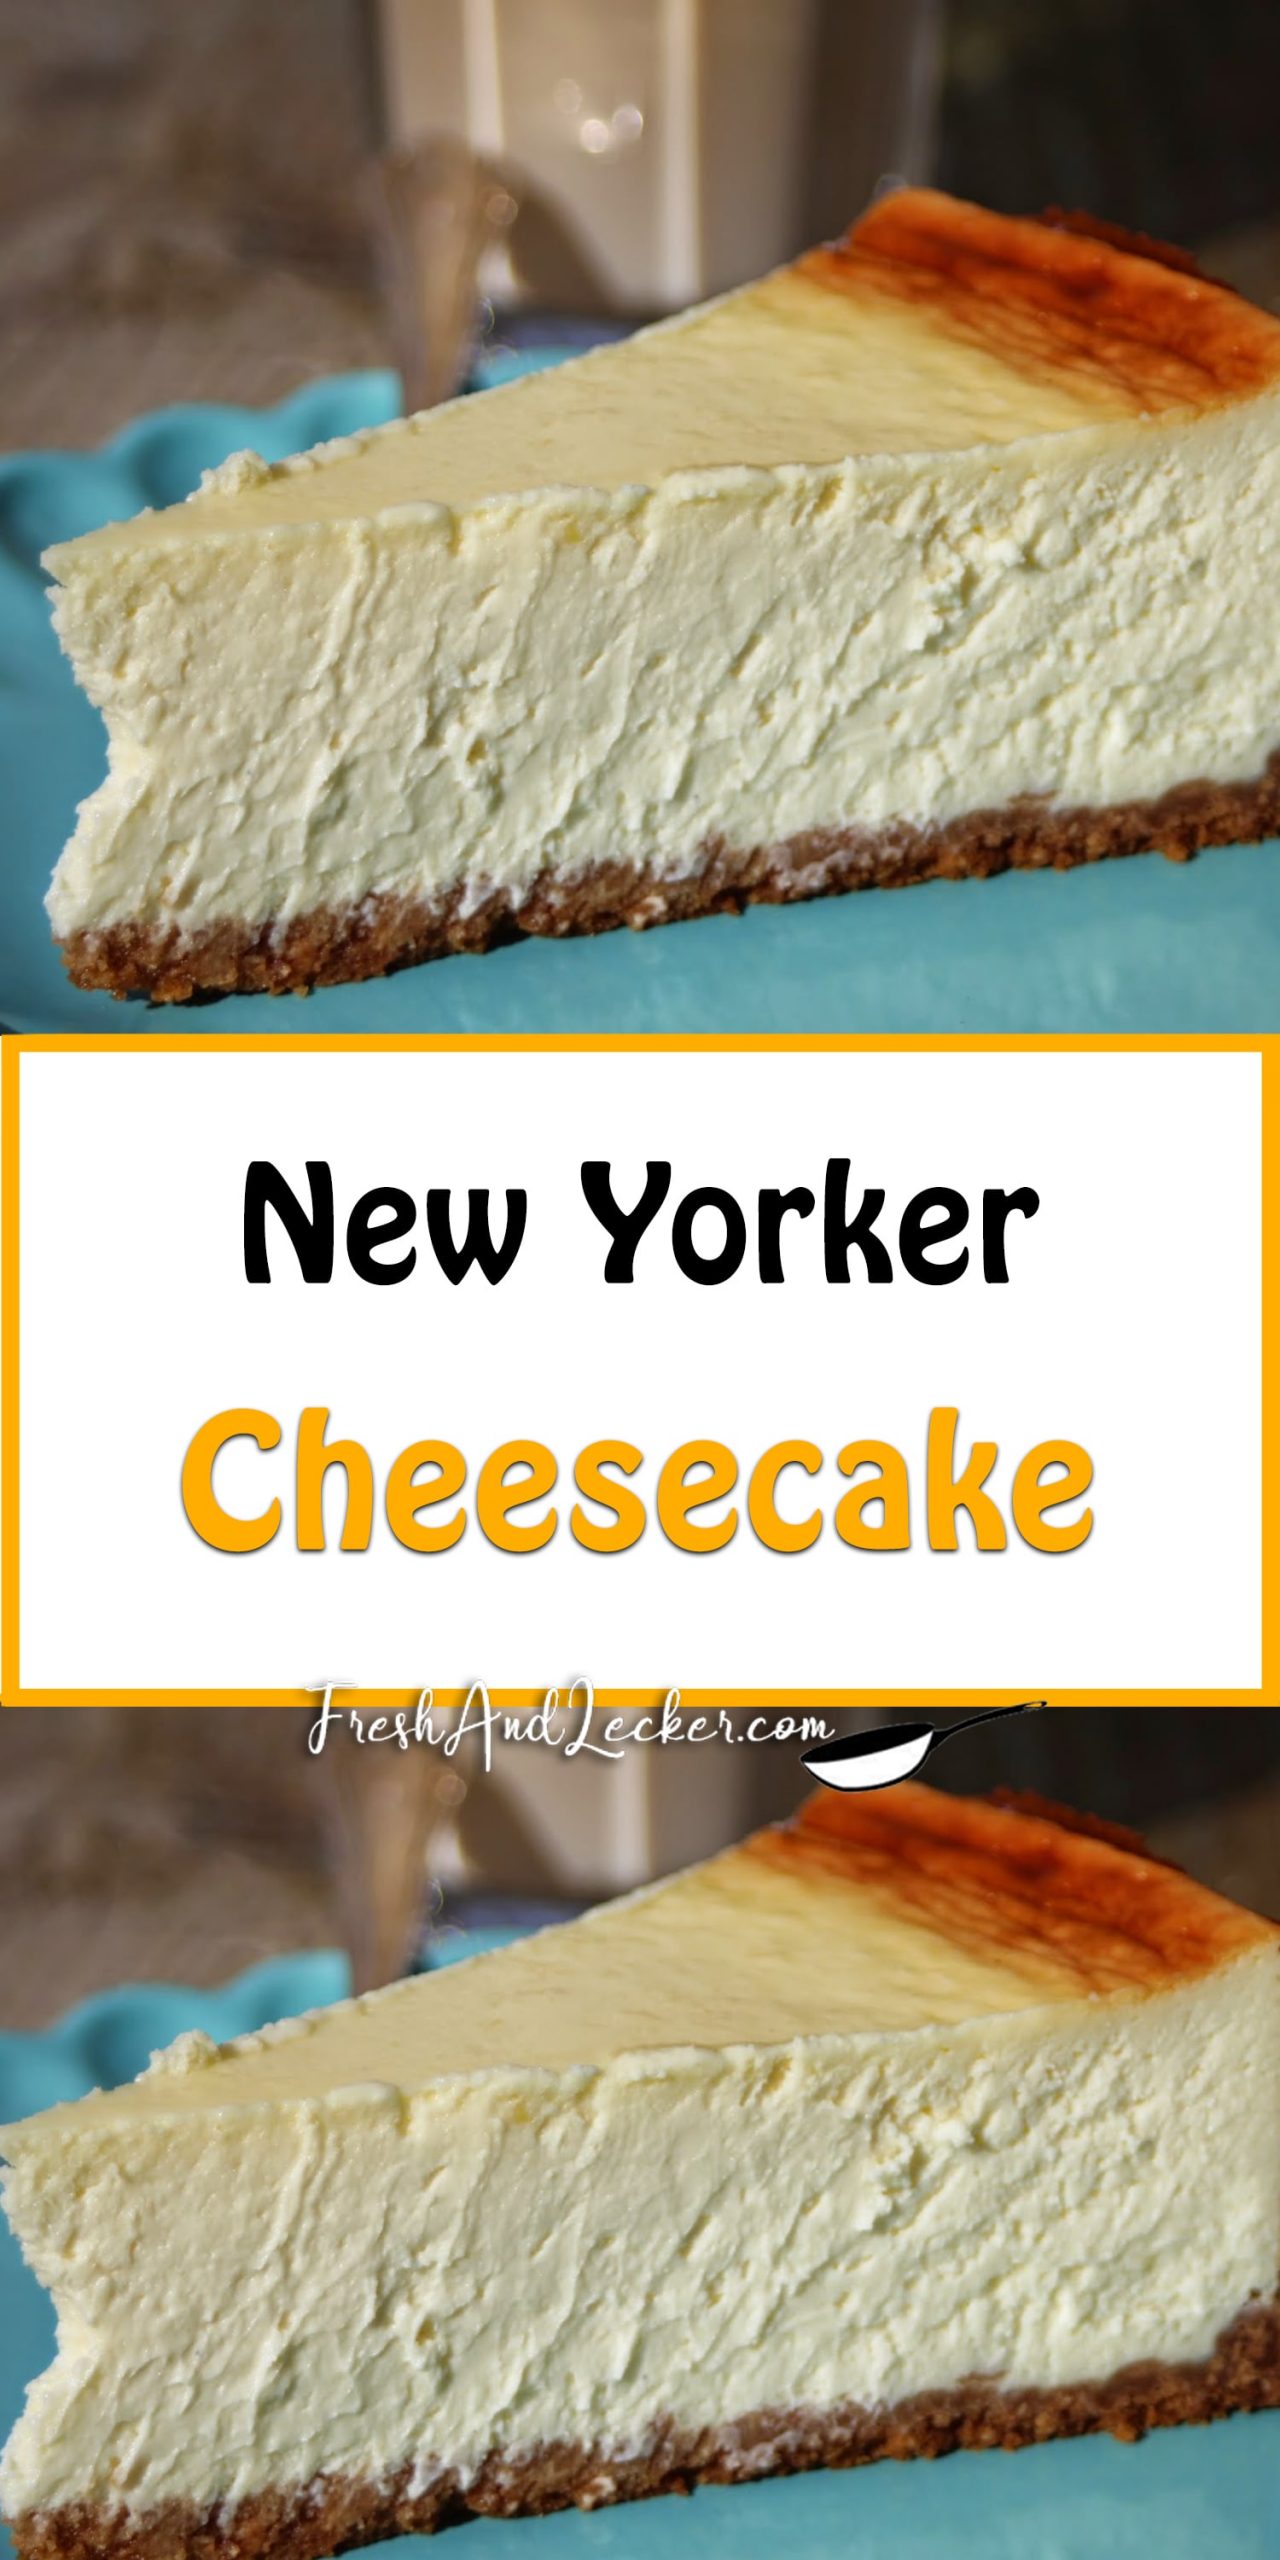 New Yorker Cheesecake - Fresh Lecker